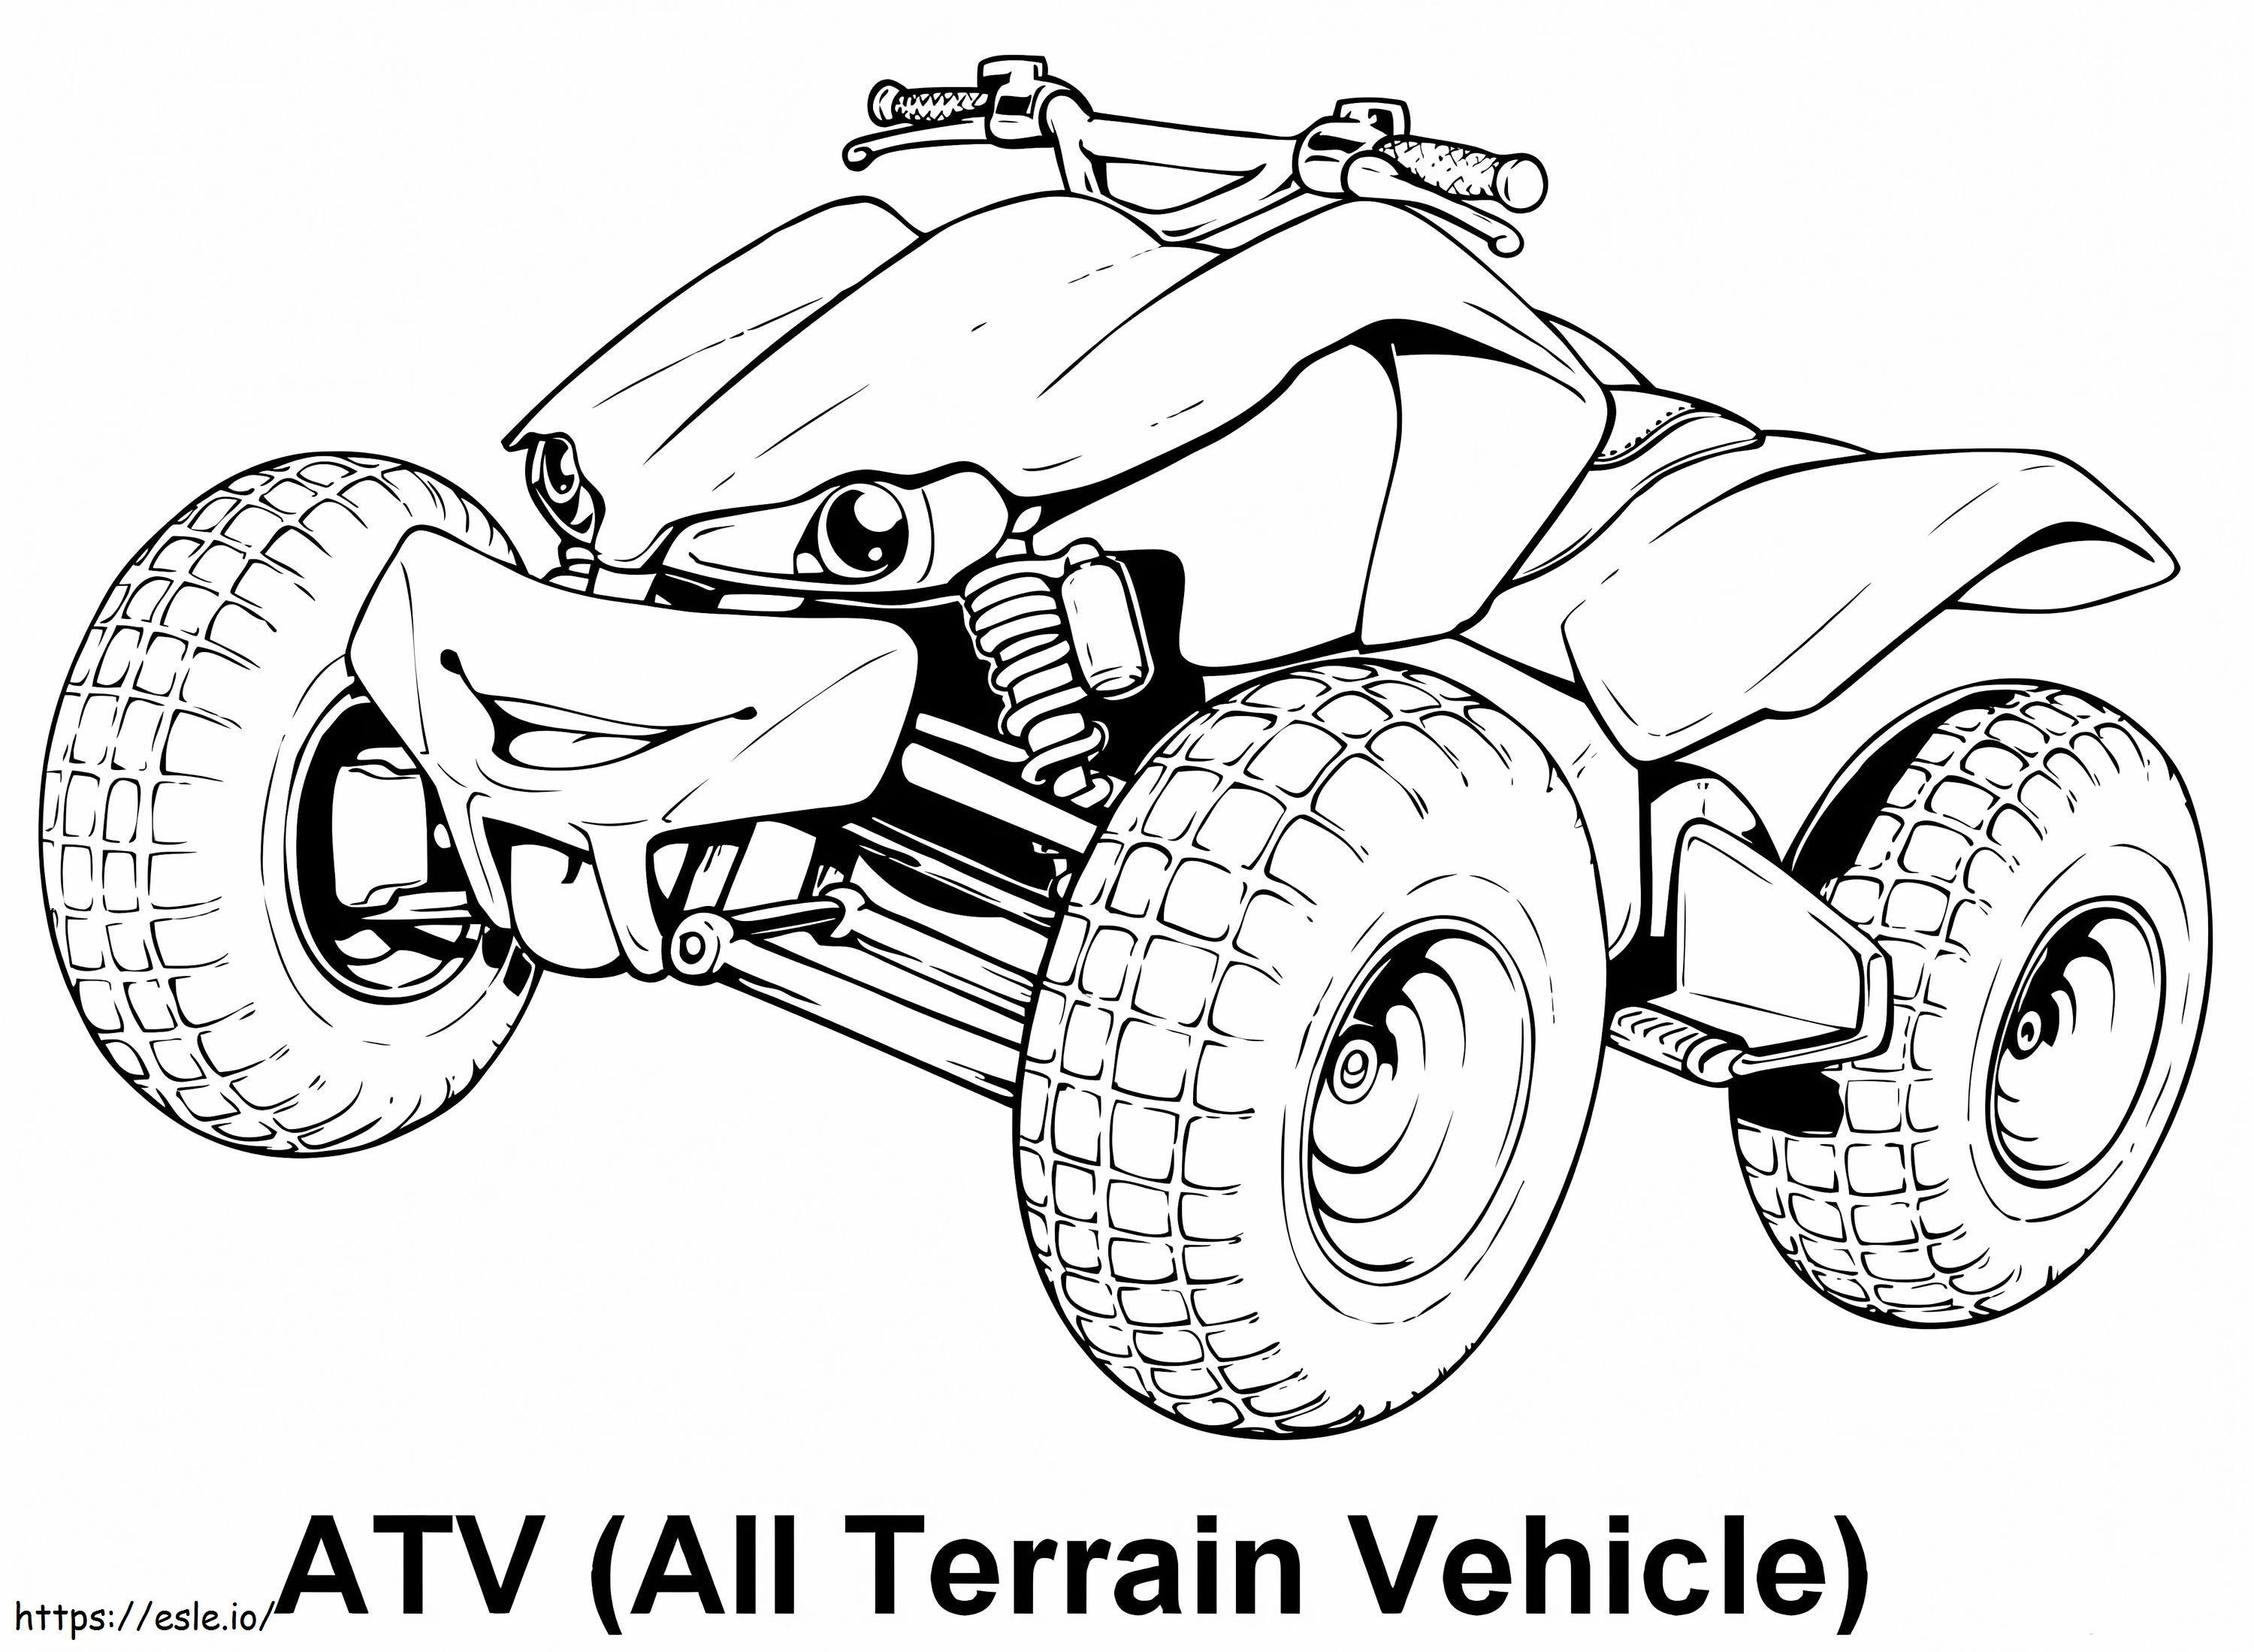 Gratuito ATV Quad Bike para colorir